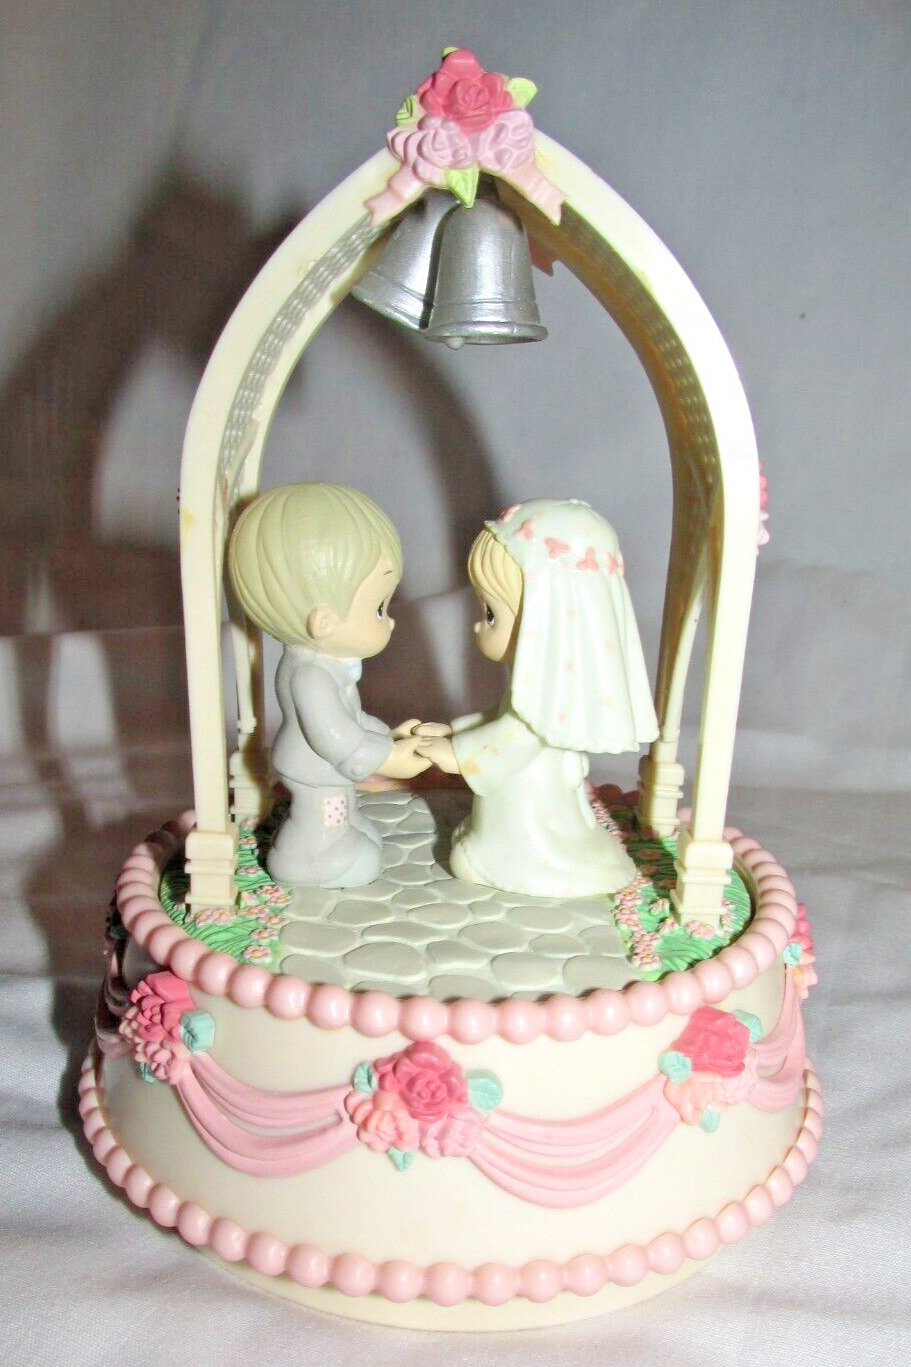 Precious Moments Bride Groom Cake Topper Music Box Plays “Close to You”, No box